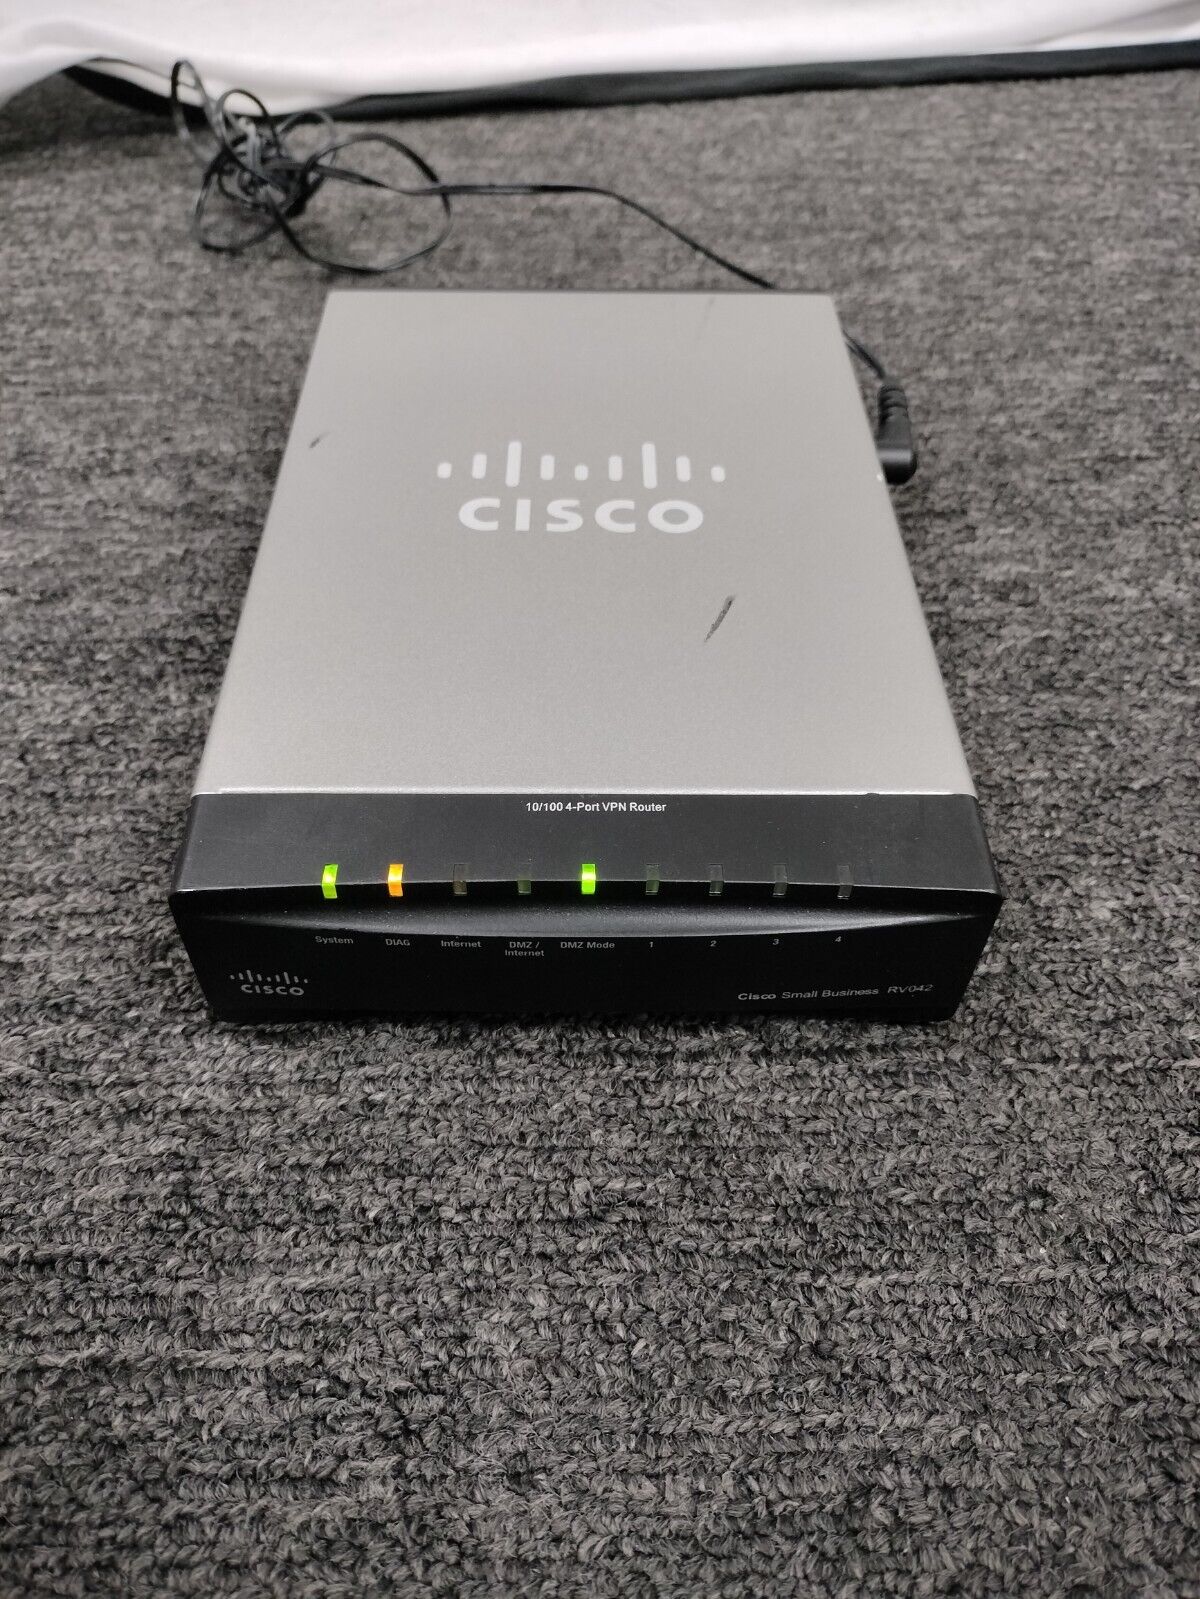 Cisco RV042 V03 4-Port 10/100 VPN Router & AC Adapter*READ DESC*